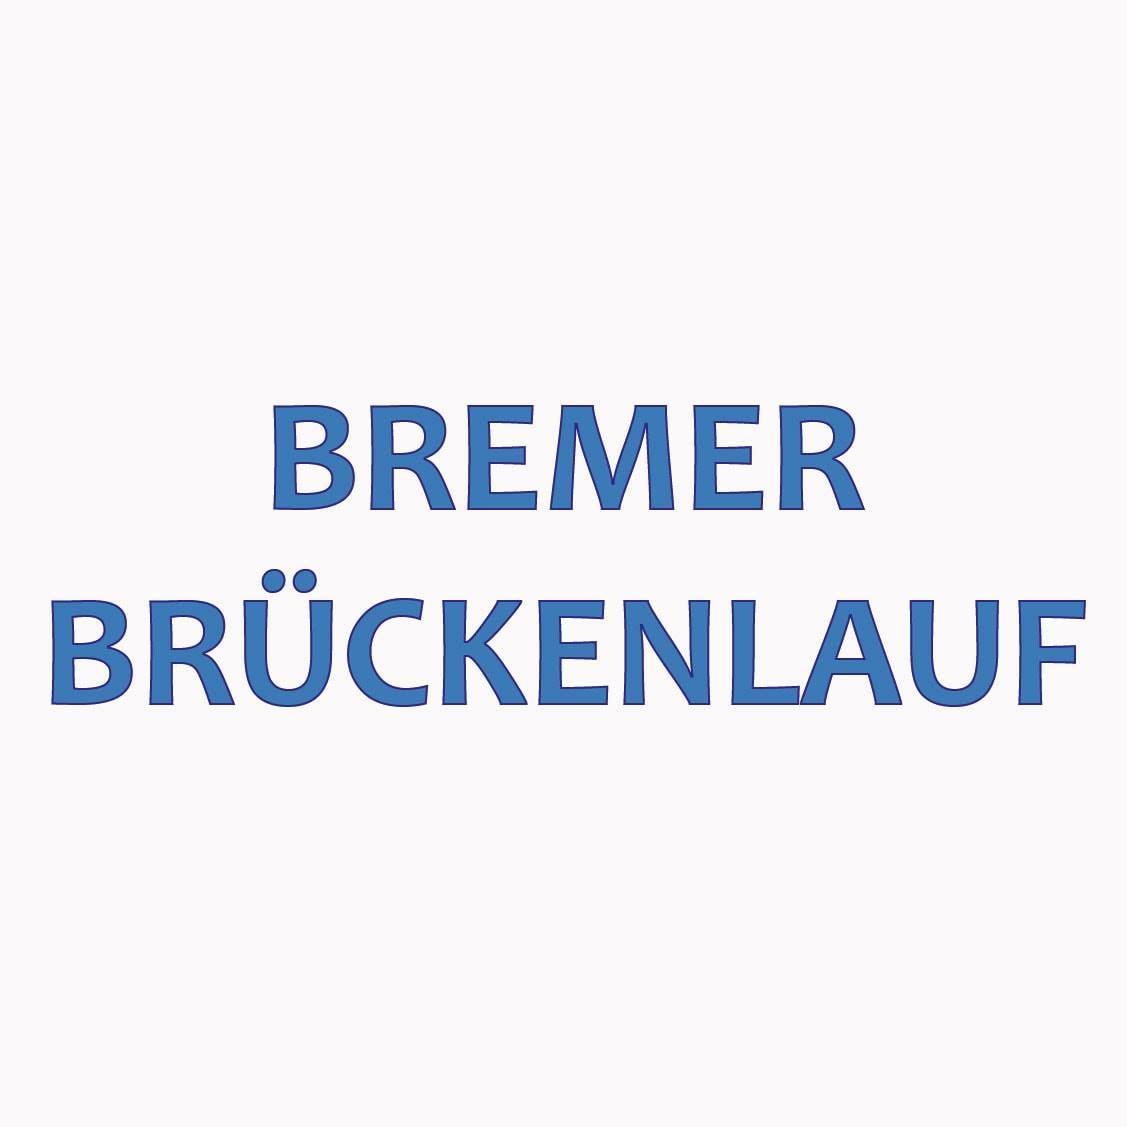 Bremer Brückenlauf